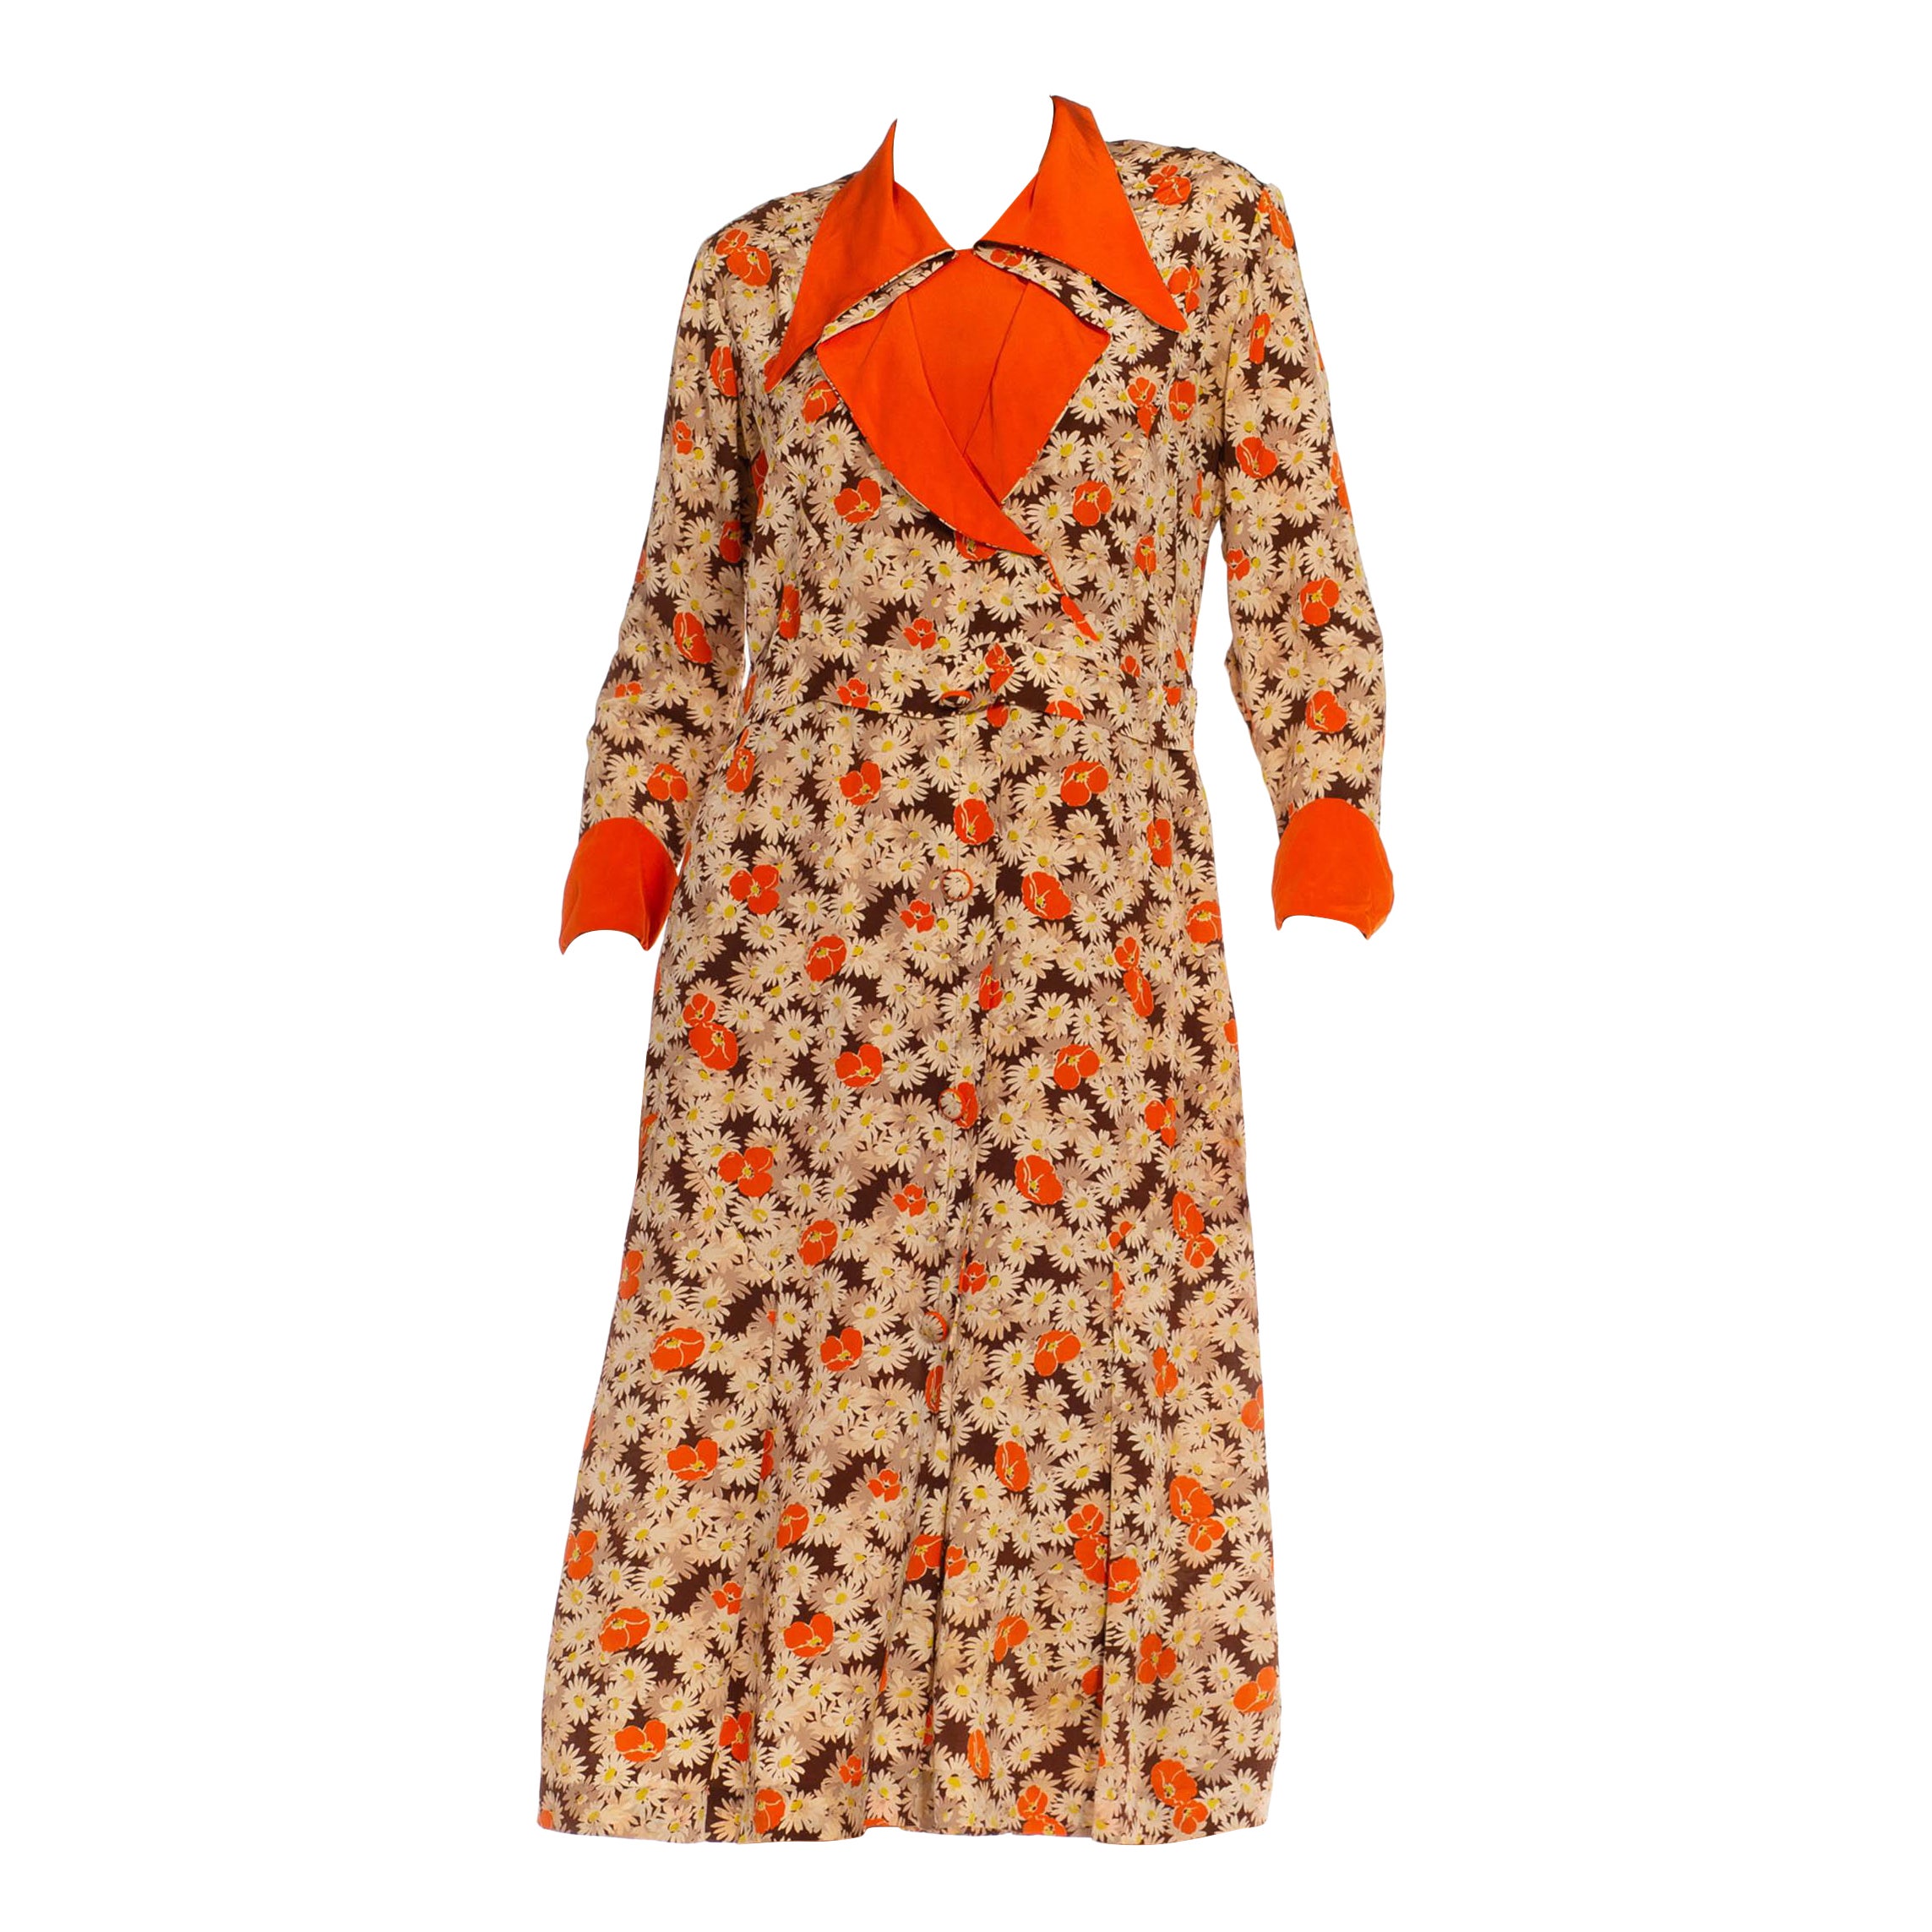 Robe marguerite imprimée en soie mélangée orange et crème à imprimé coquelicot, années 1930 en vente